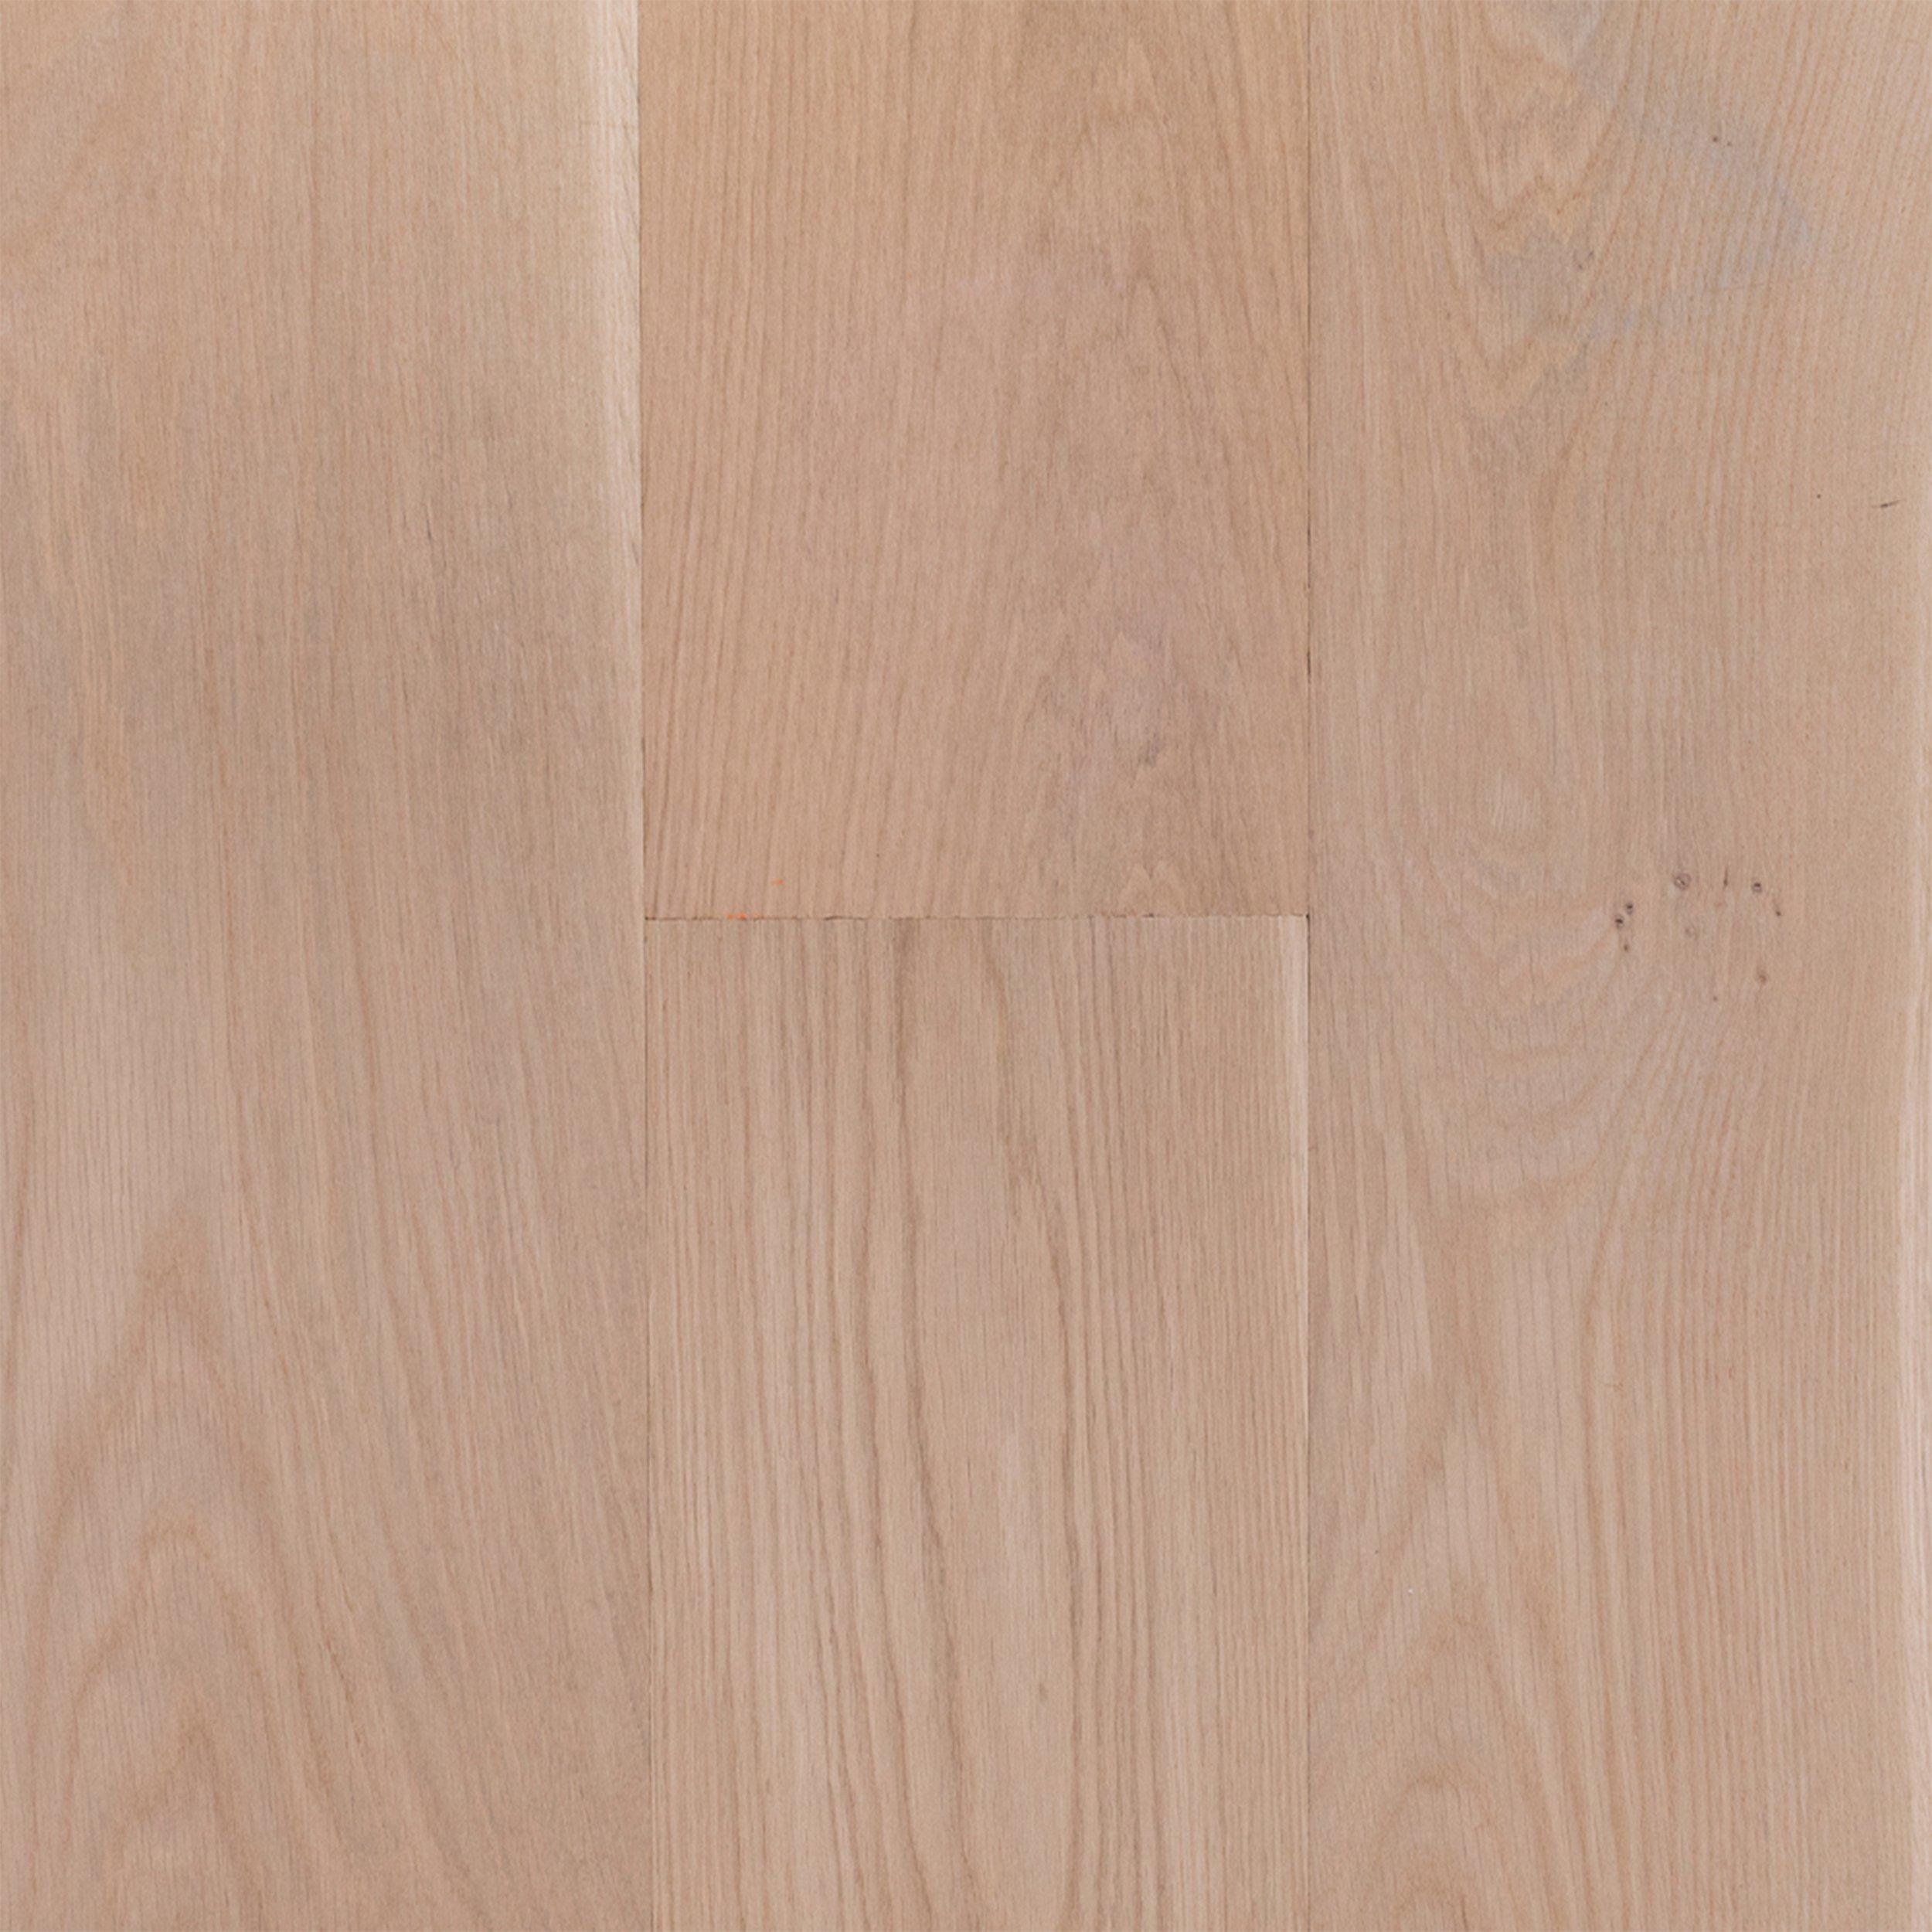 Unfinished White Oak Engineered, Unfinished White Oak Engineered Hardwood Flooring